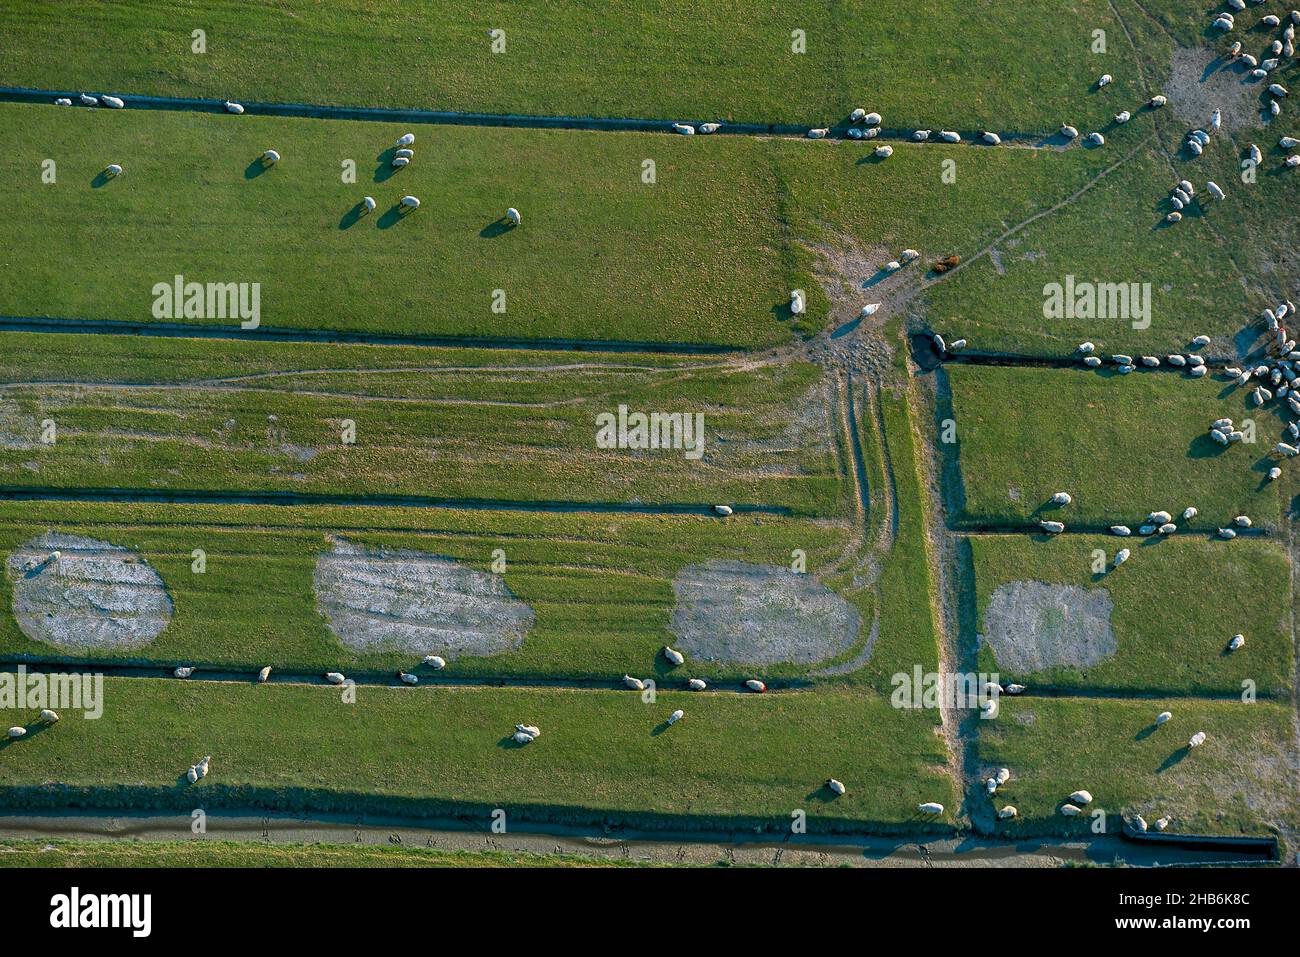 Ovejas domésticas (Ovis ammon f. aries), rebaño de ovejas en praderas de un dique exterior con zanjas de drenaje antiguas, vista aérea , Alemania, Foto de stock